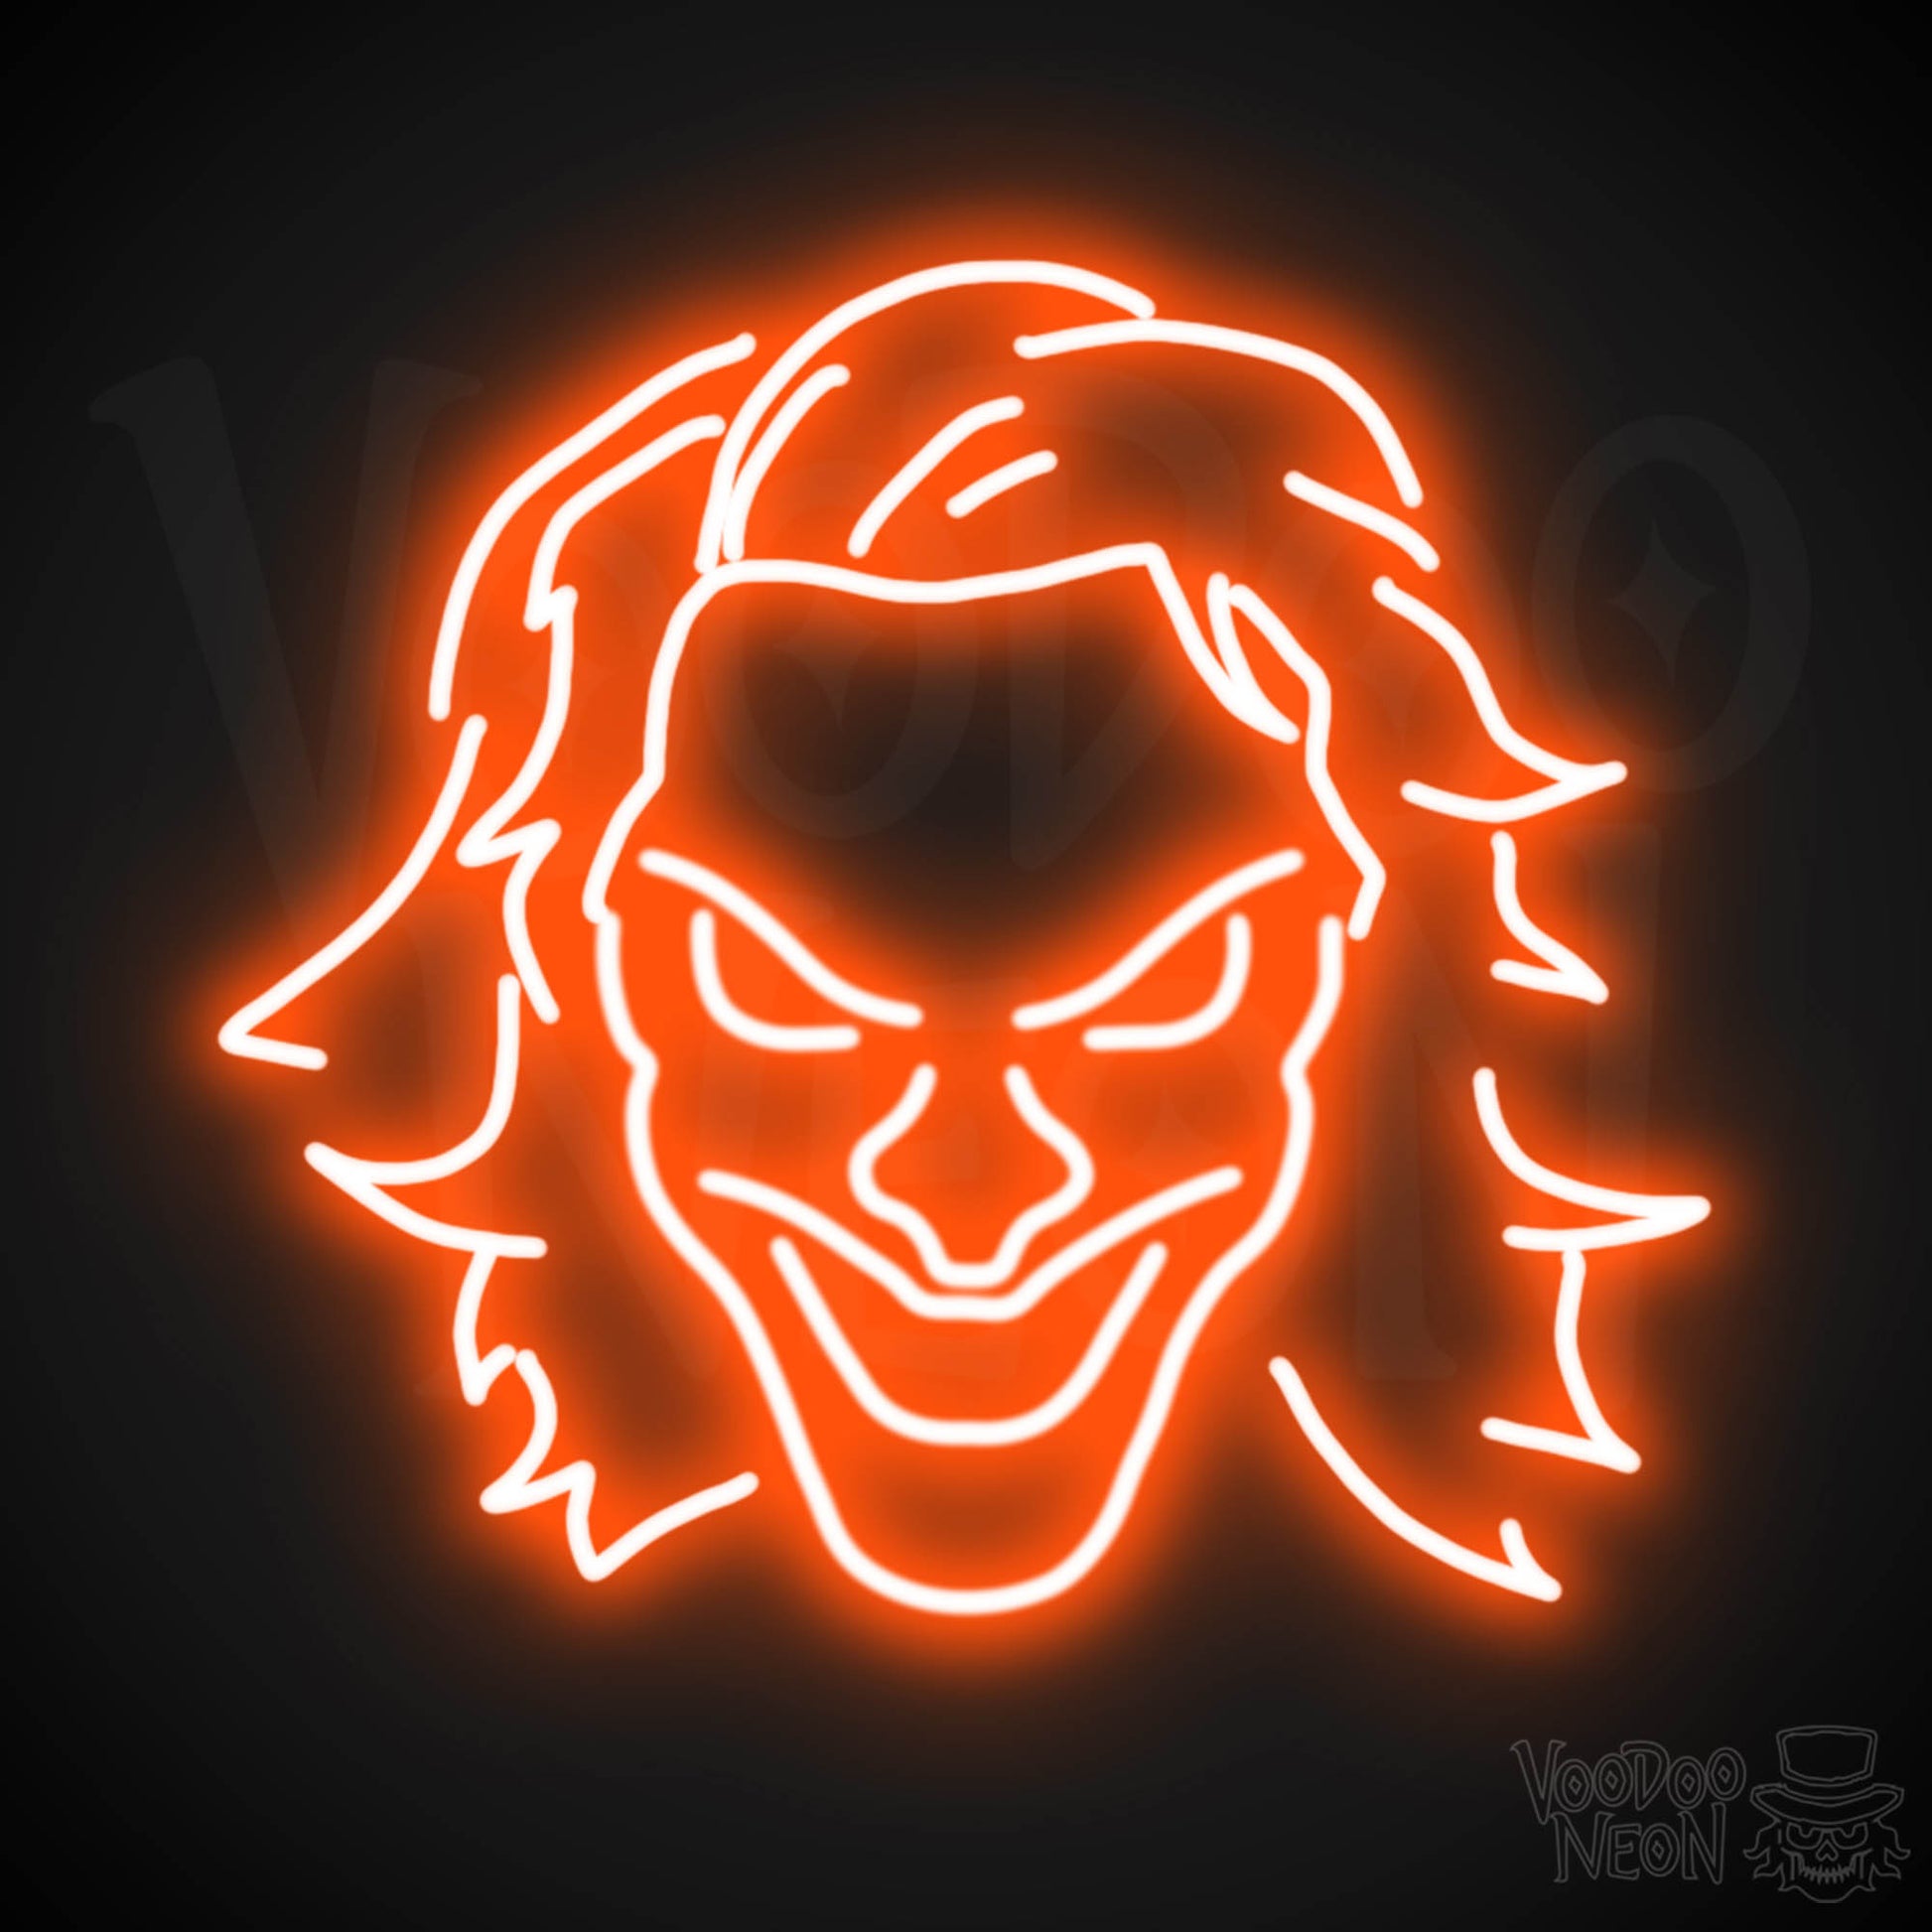 Joker Neon Sign - Neon Joker Sign - Joker LED Wall Art - Color Orange